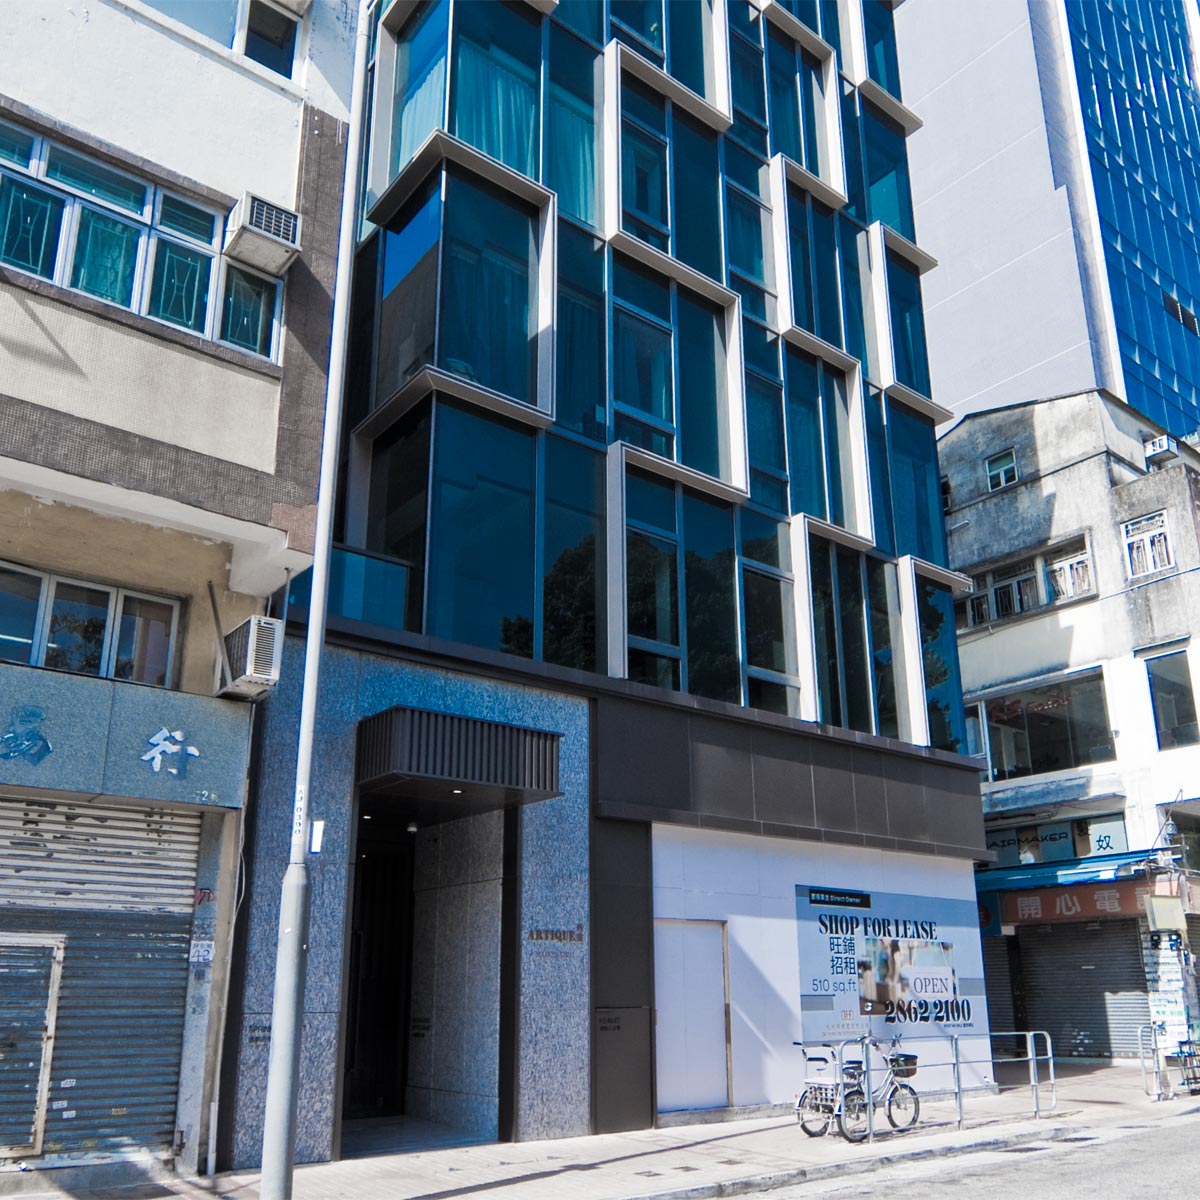 Artique, Residential Development at 38 San Lok St., Sheung Shui, N.T.